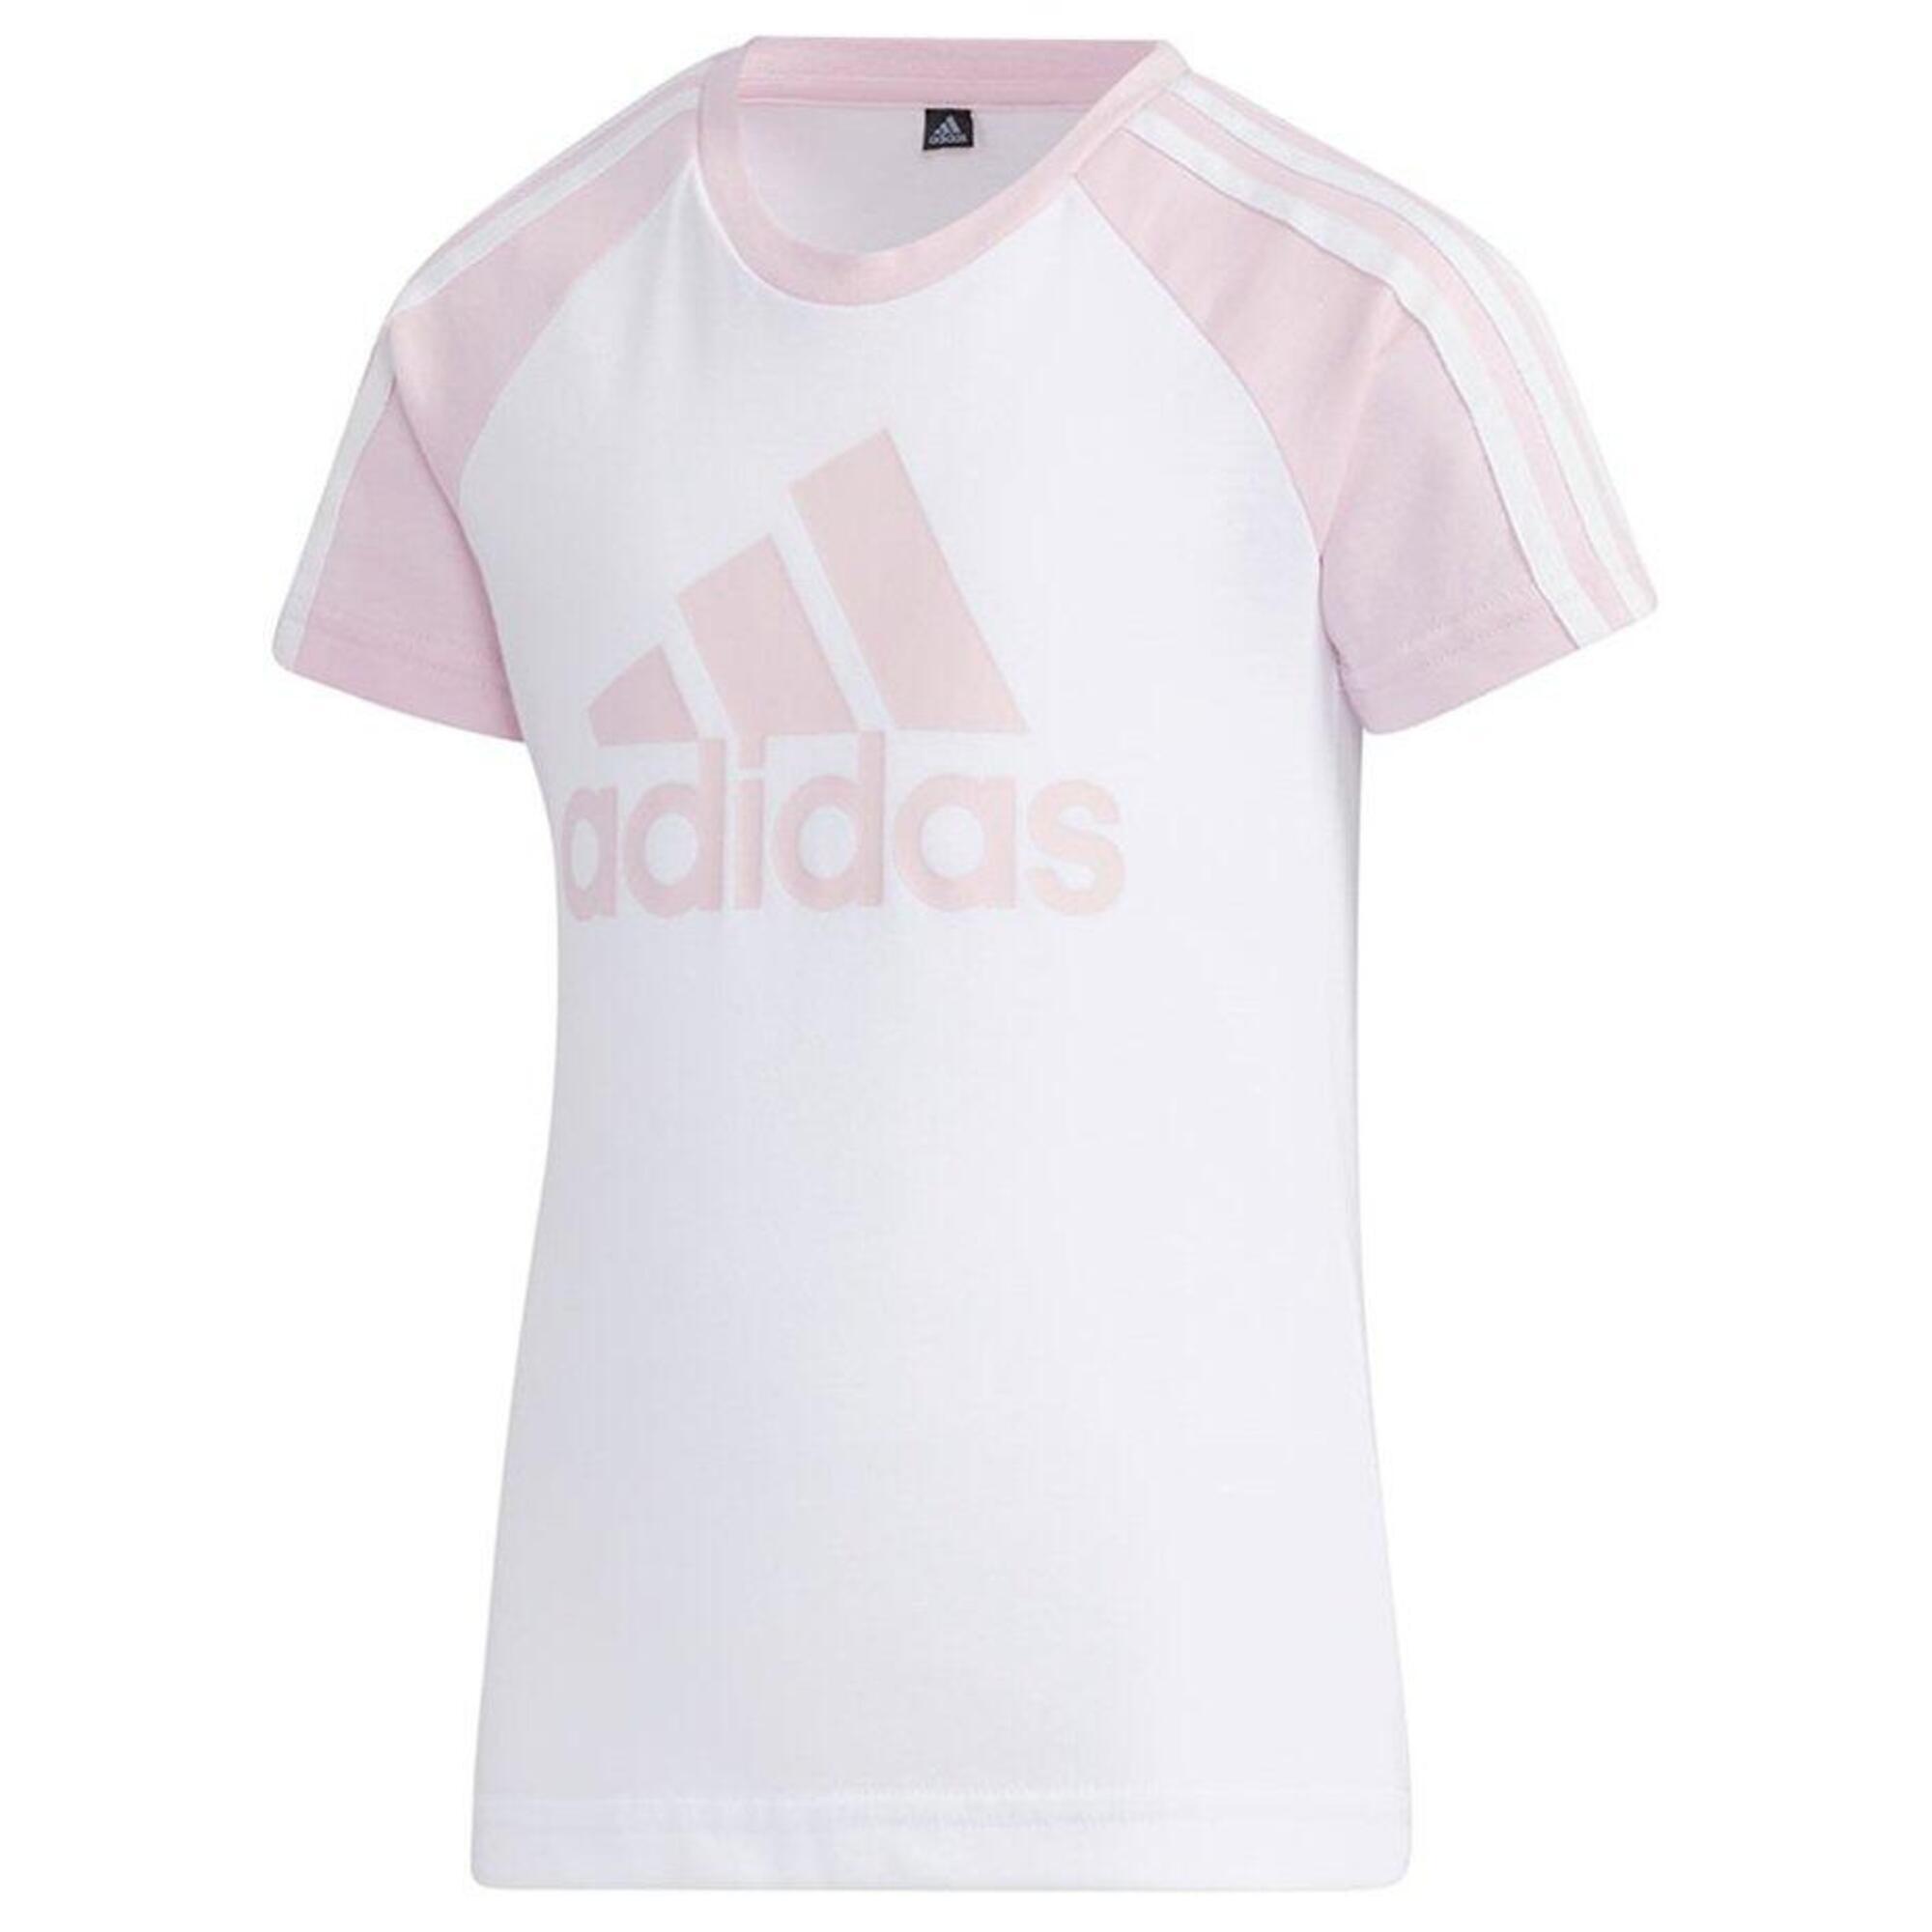 Koszulka dla dzieci adidas Lg St Bos Tee biało-różowa GP0430